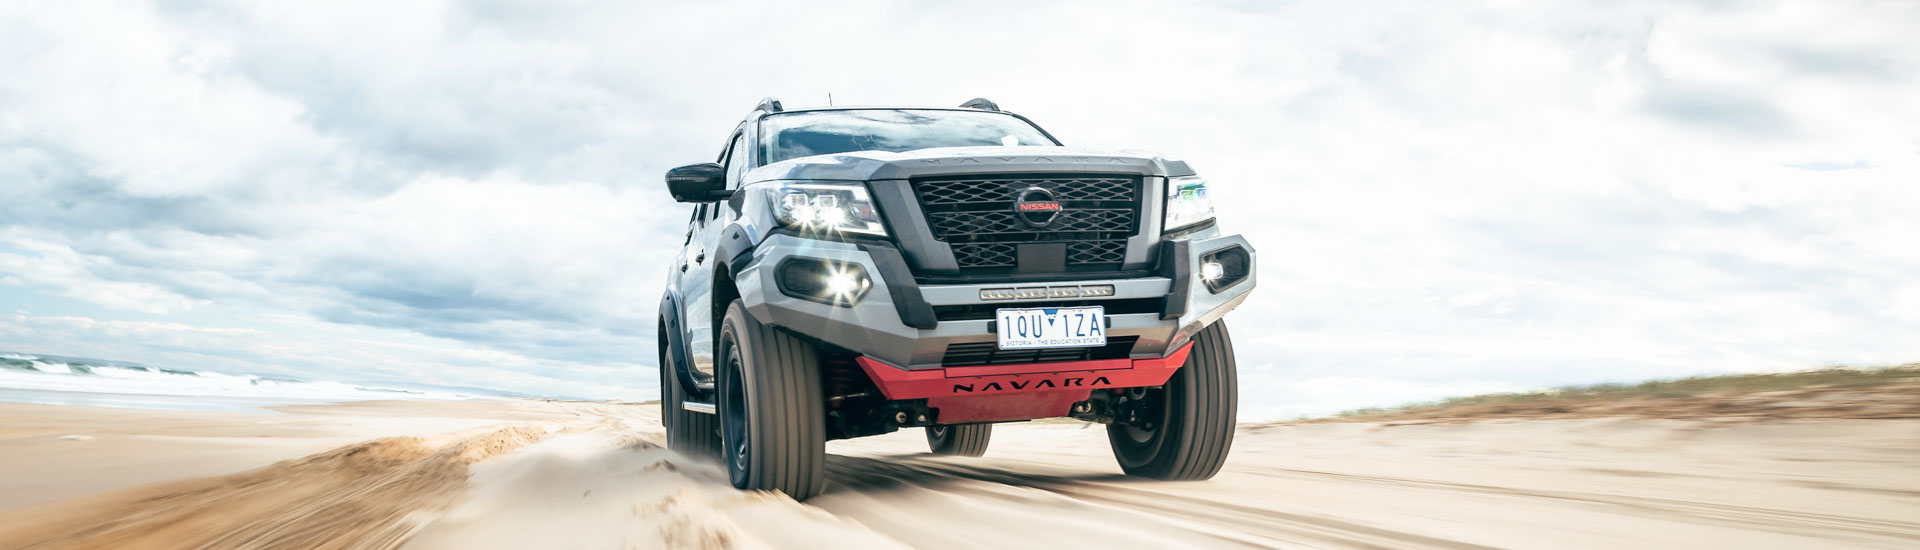 Nissan Navara SL Warrior Debuts To Take On Australian Outback